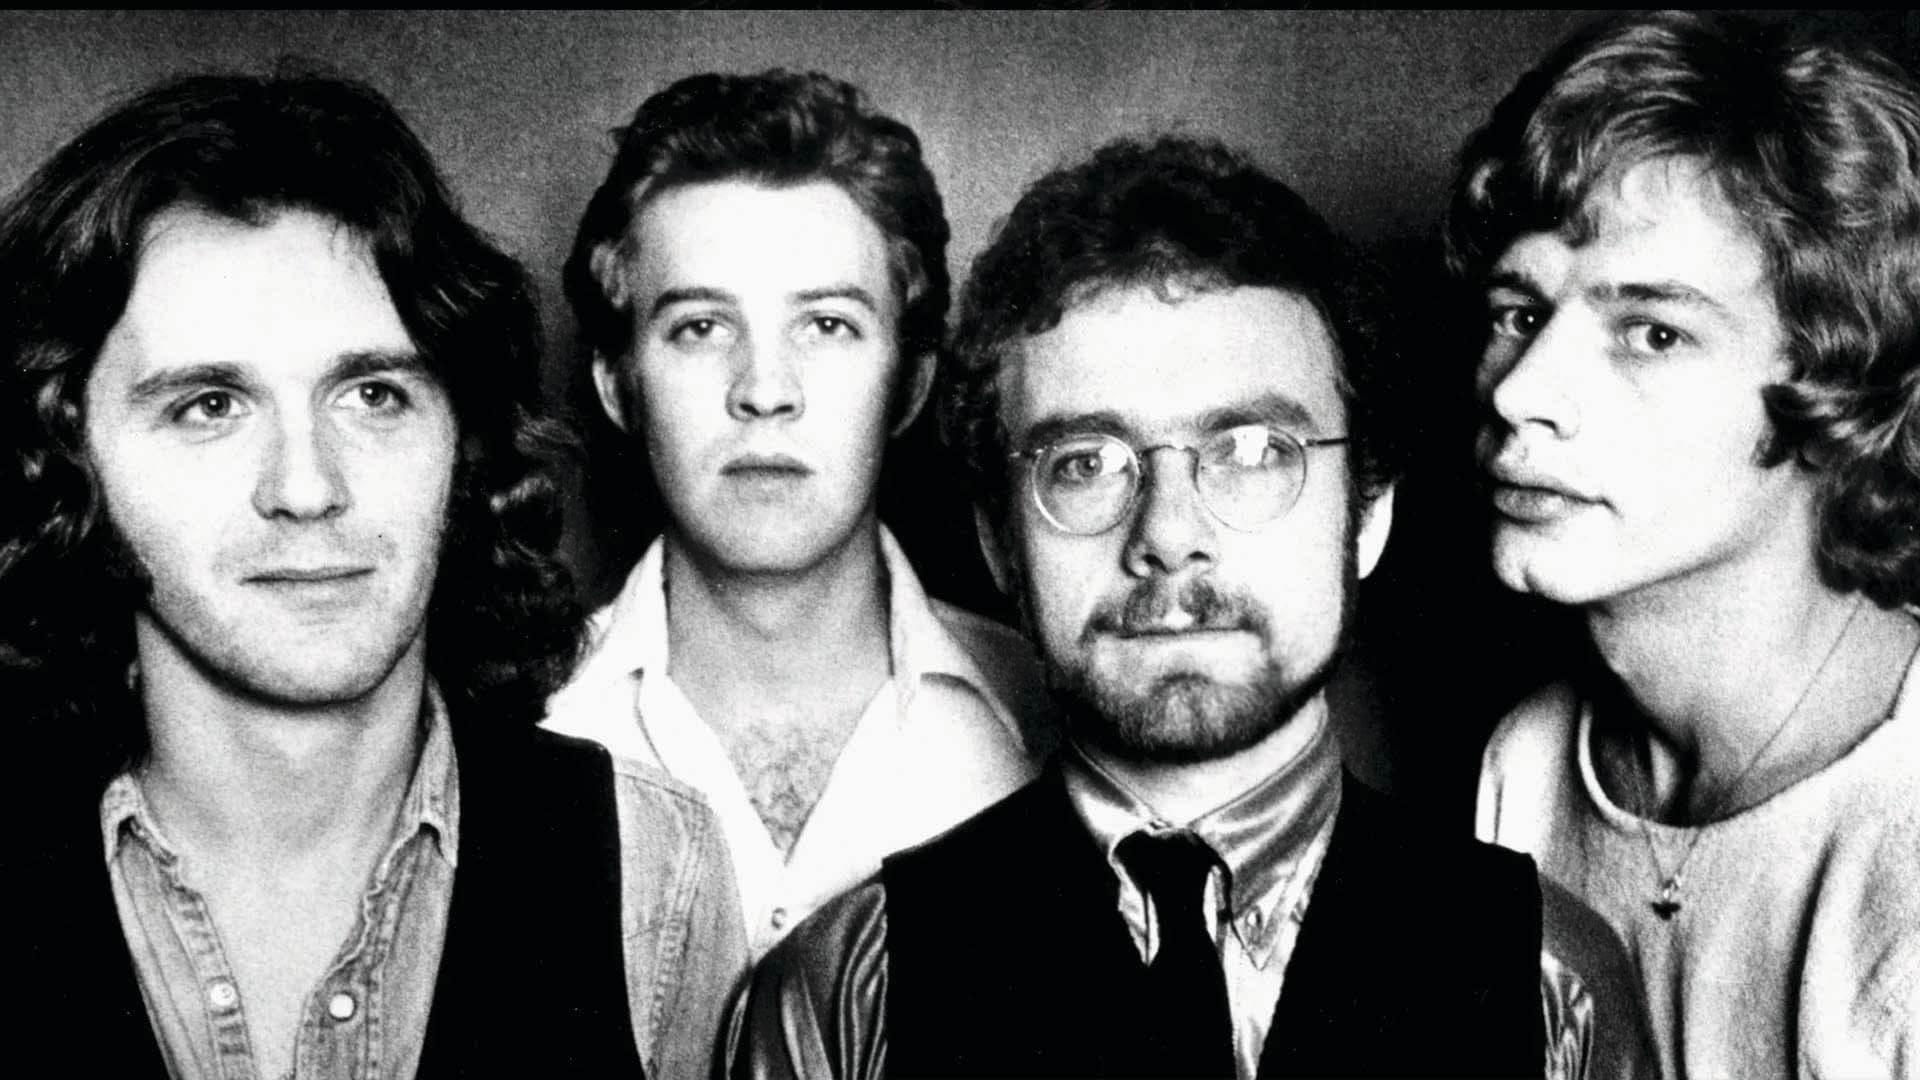 King Crimson - Eyes Wide Open backdrop